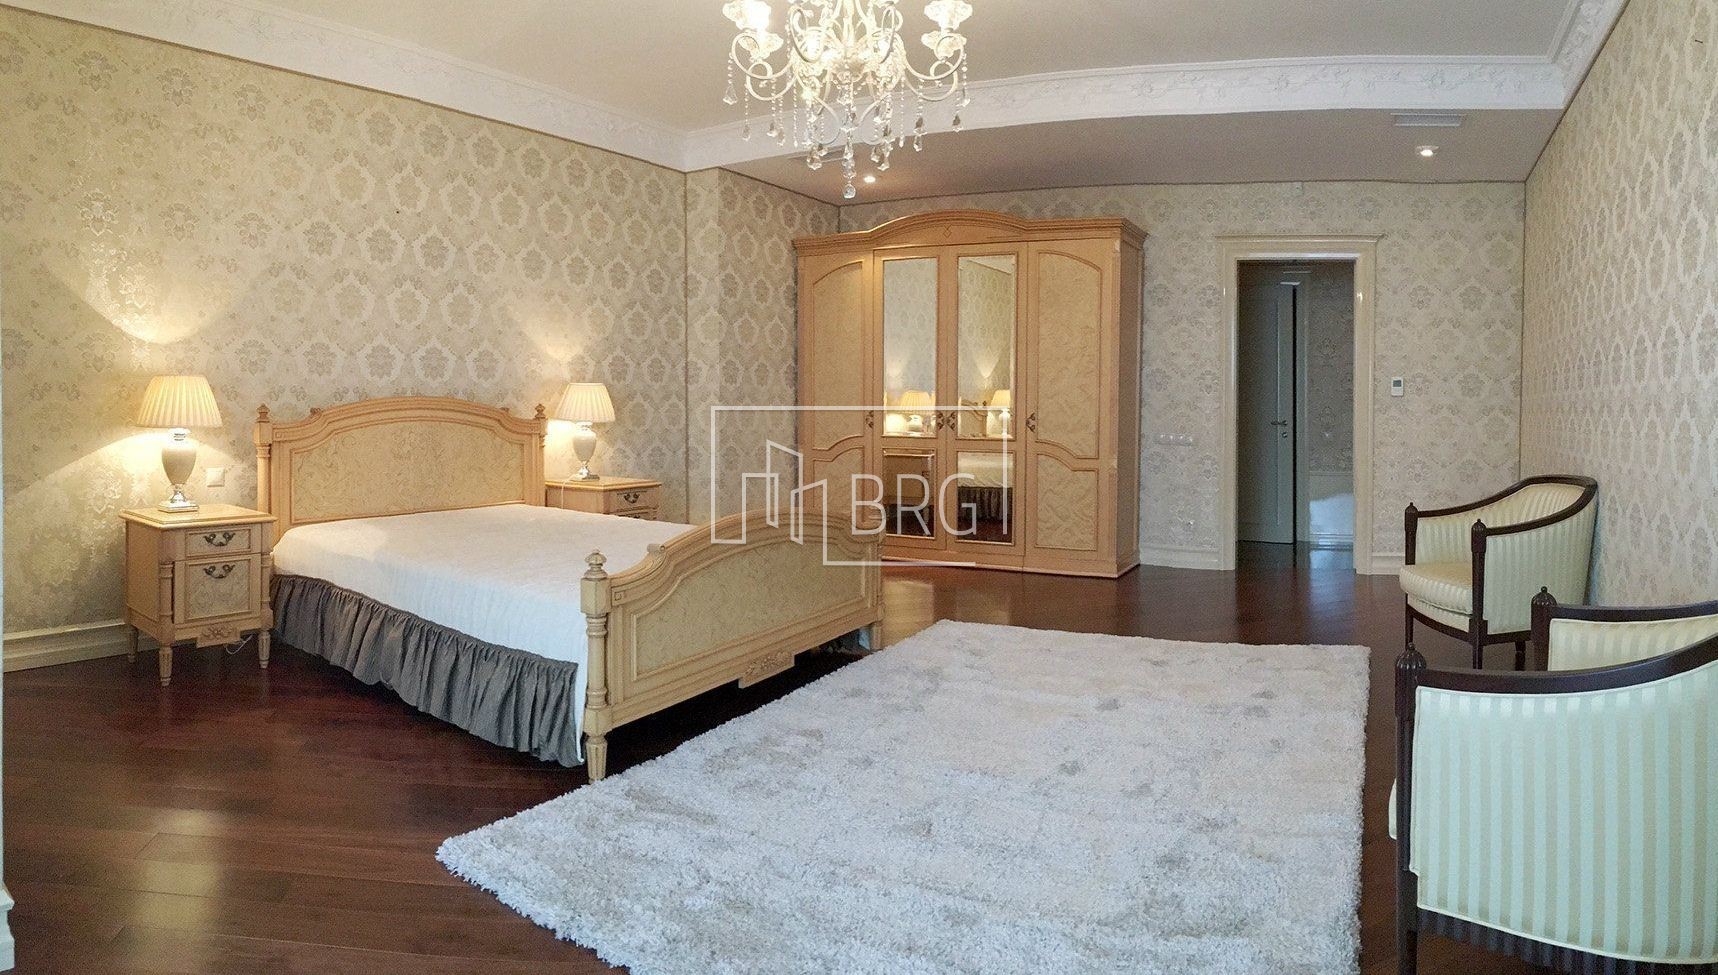 Аренда 4х комнатной квартиры, ЖК "Липская башня". Киев